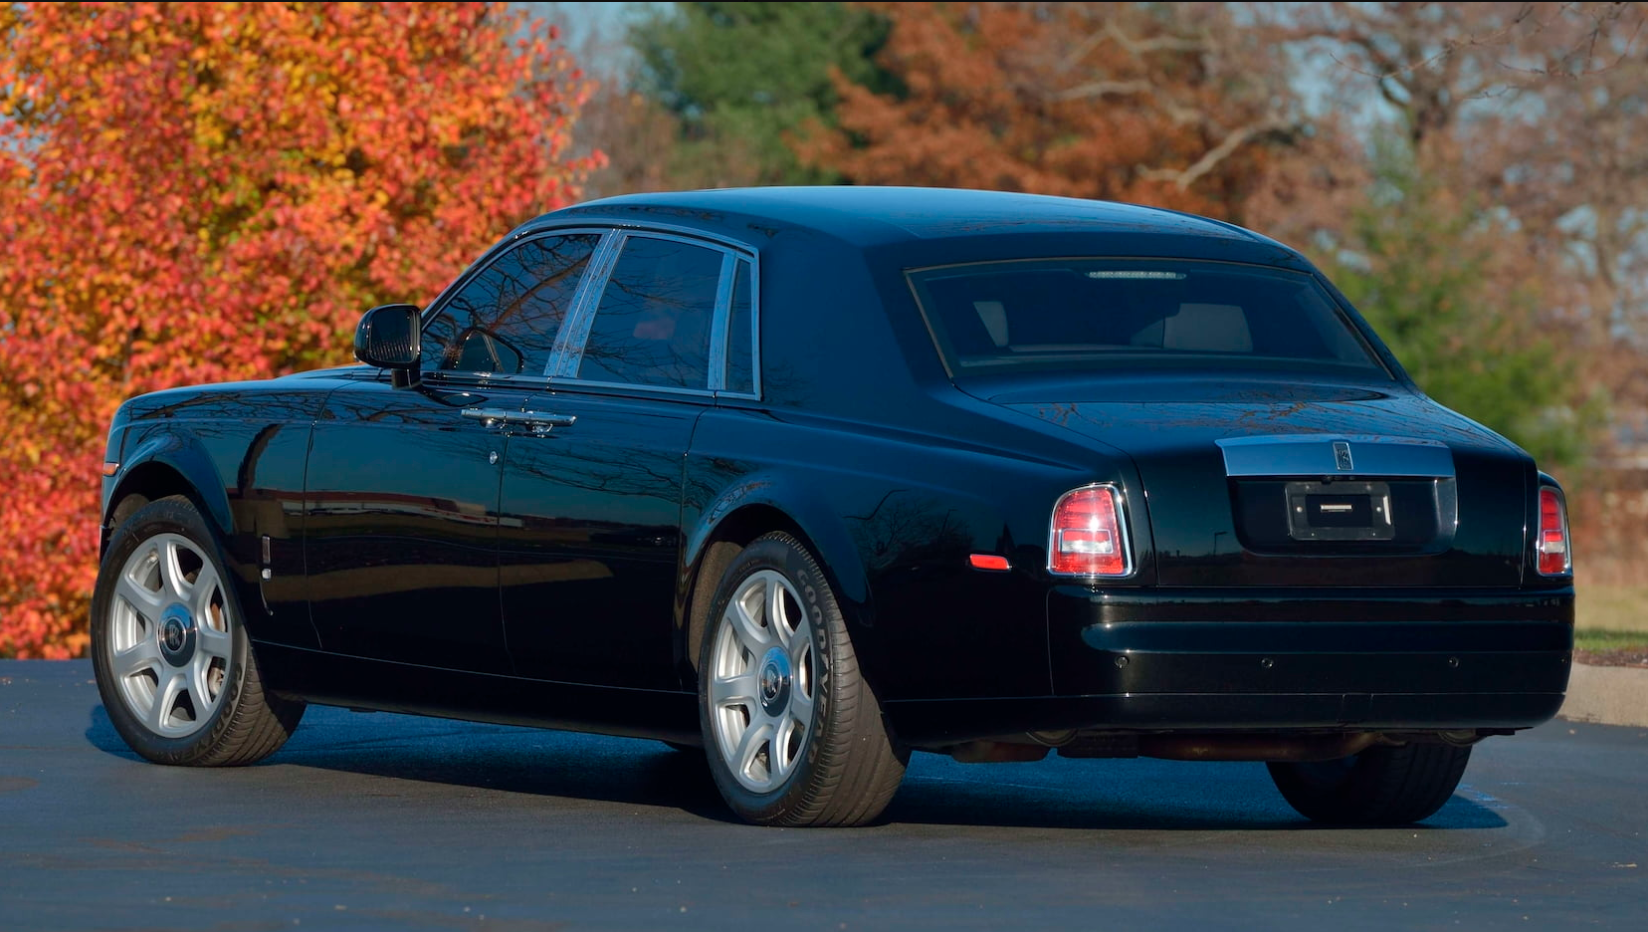 Rolls-Royce Phantom từng của Donald Trump sắp được bán đấu giá anh-chup-man-hinh-2021-01-07-luc-152533.png